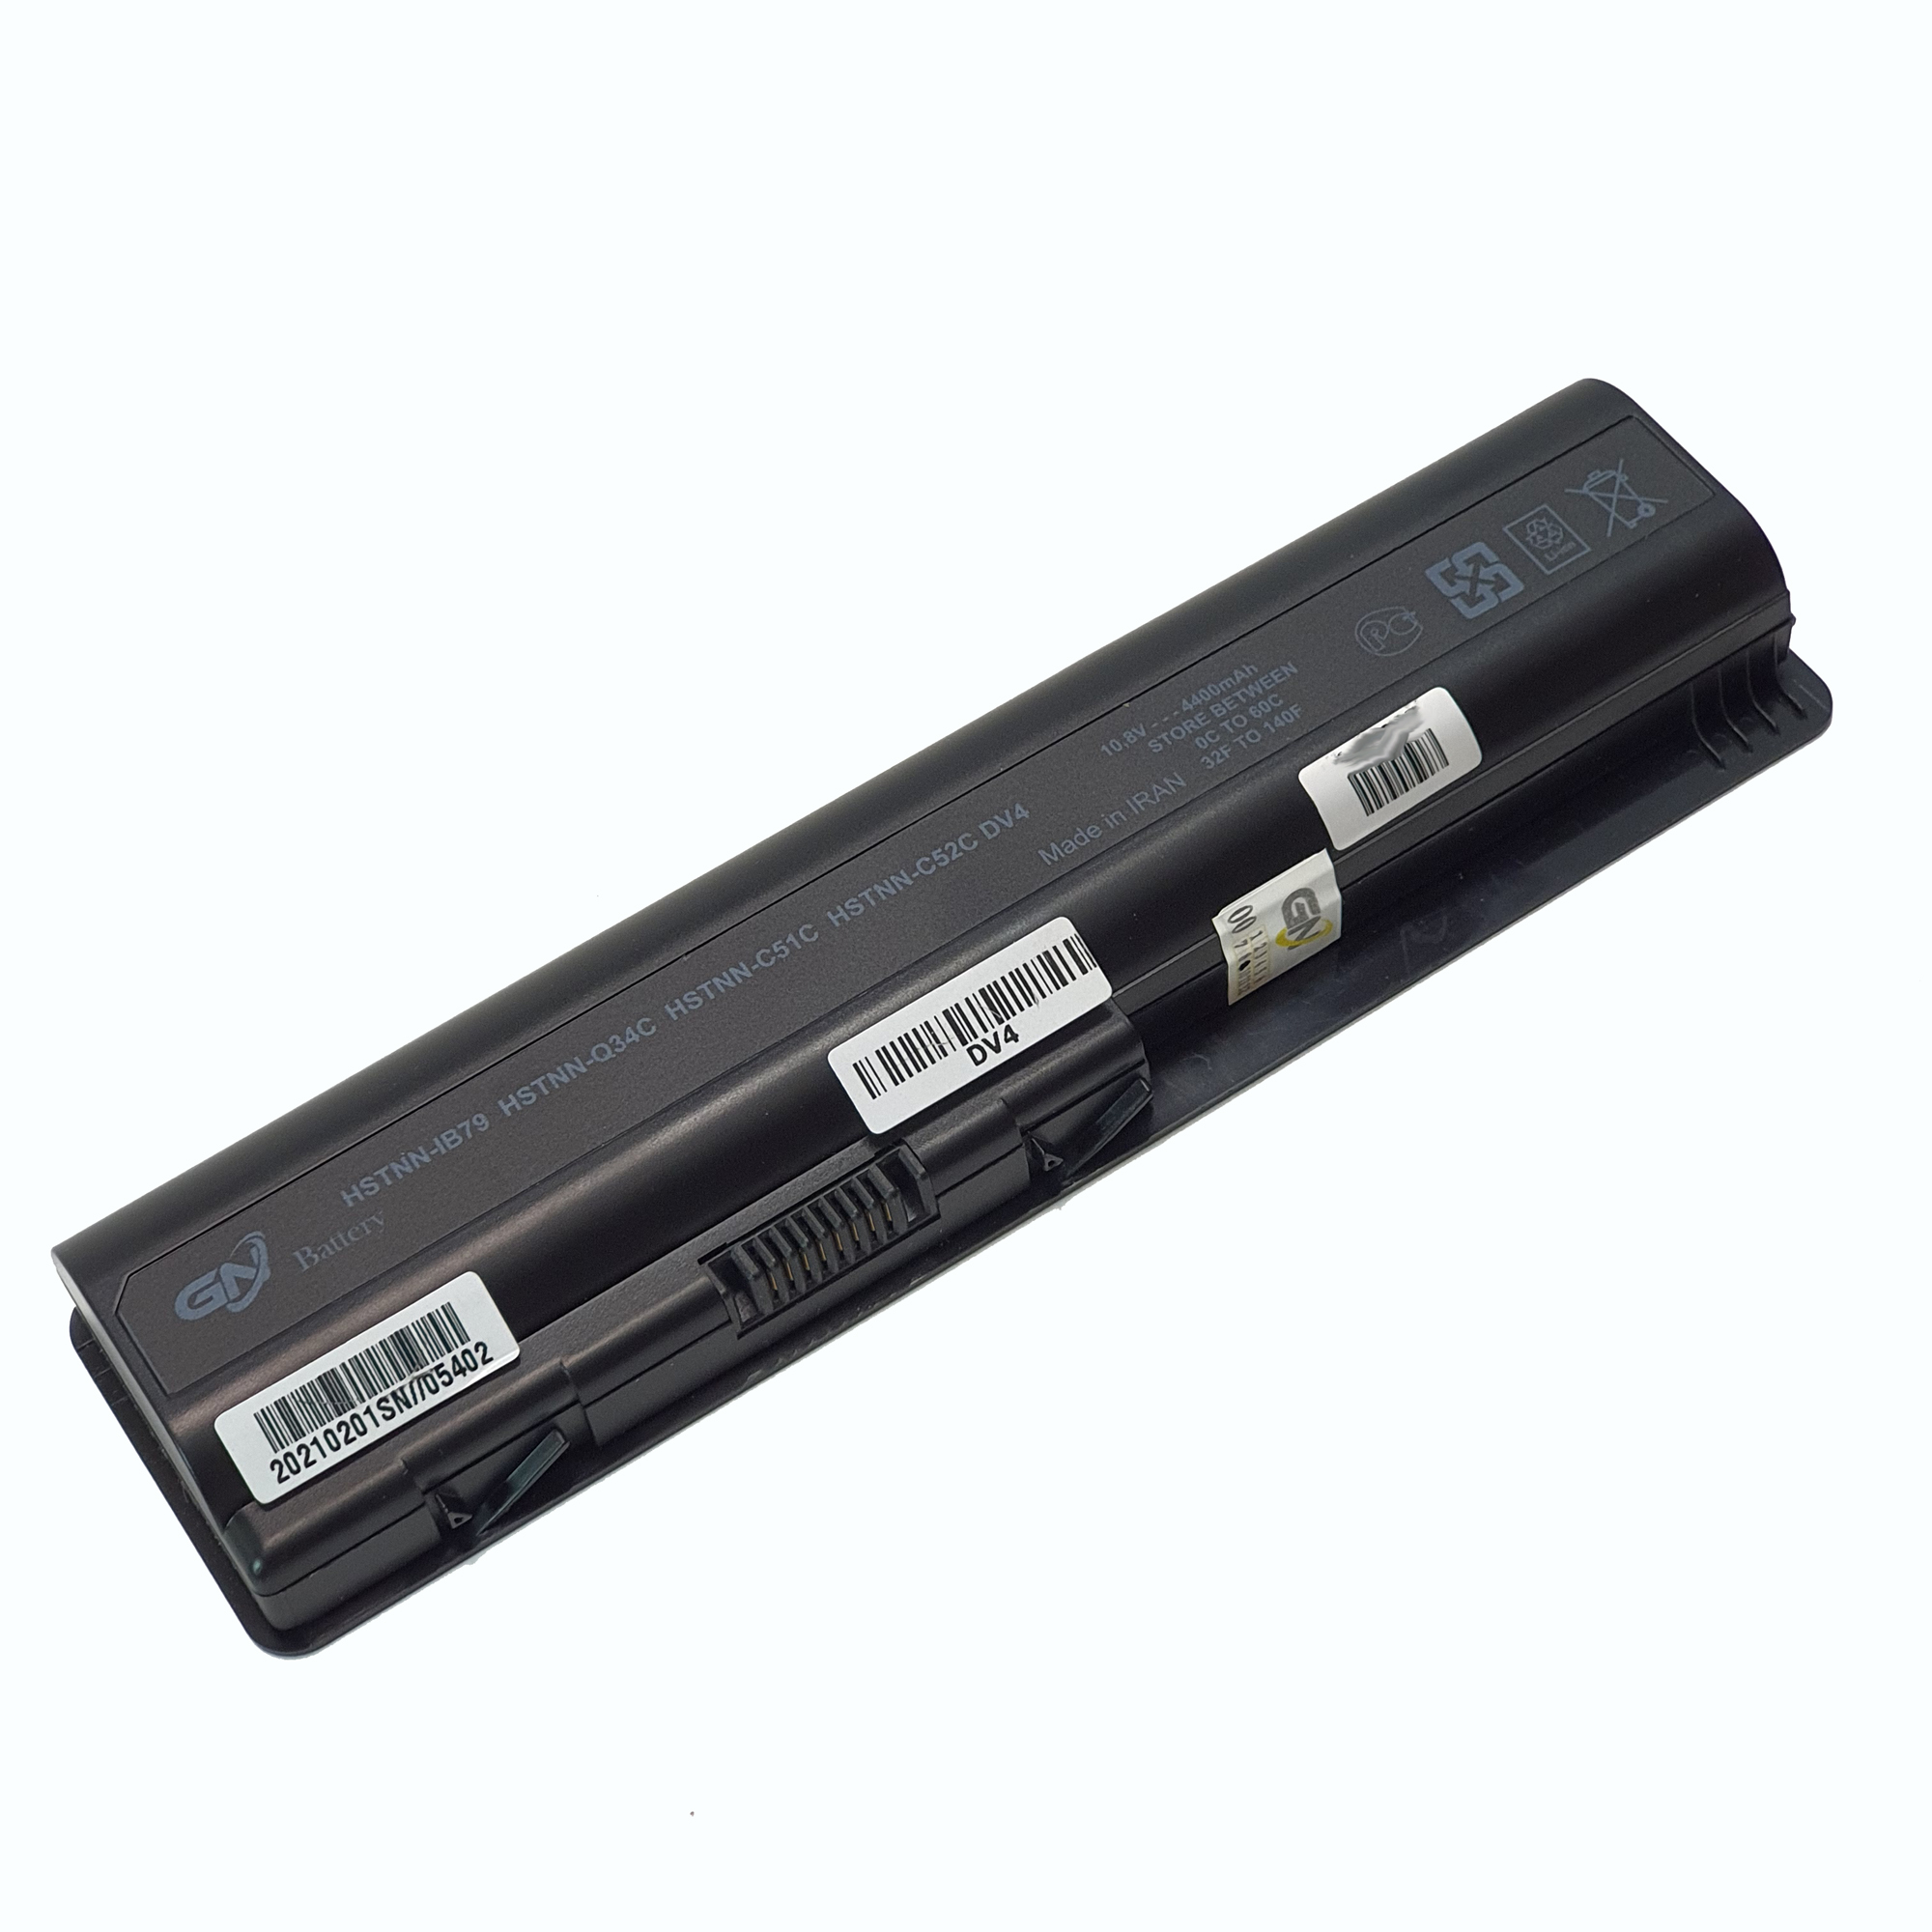 باتری لپ تاپ 6 سلولی گلدن نوت بوک دل DV4 مناسب برای لپ تاپ  DV4-1000/DV4-2000/DV5-1000/DV6-1000/DV6-2000/CQ71/G50/G60/G61/G70